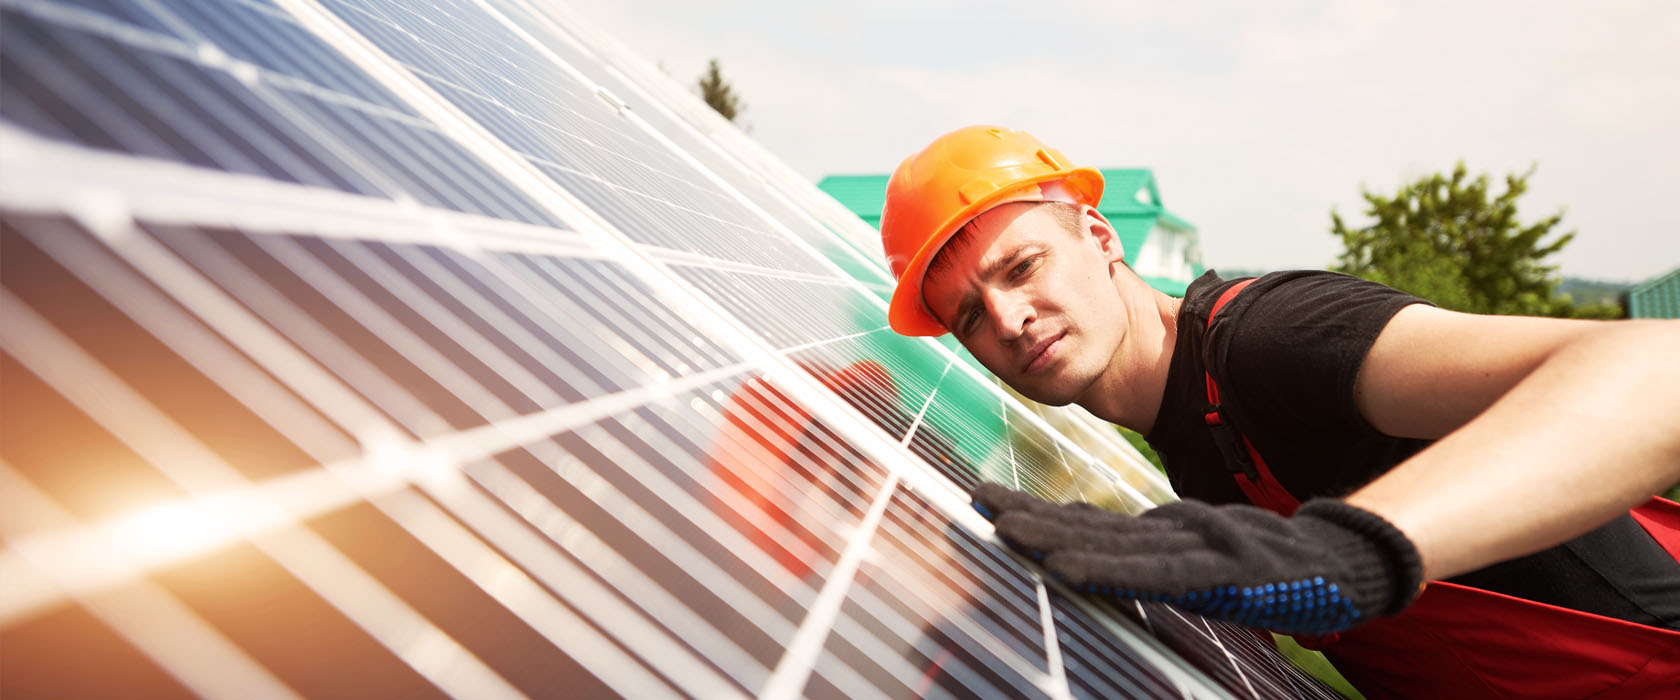 Was ist eine gewerbliche Photovoltaikversicherung?